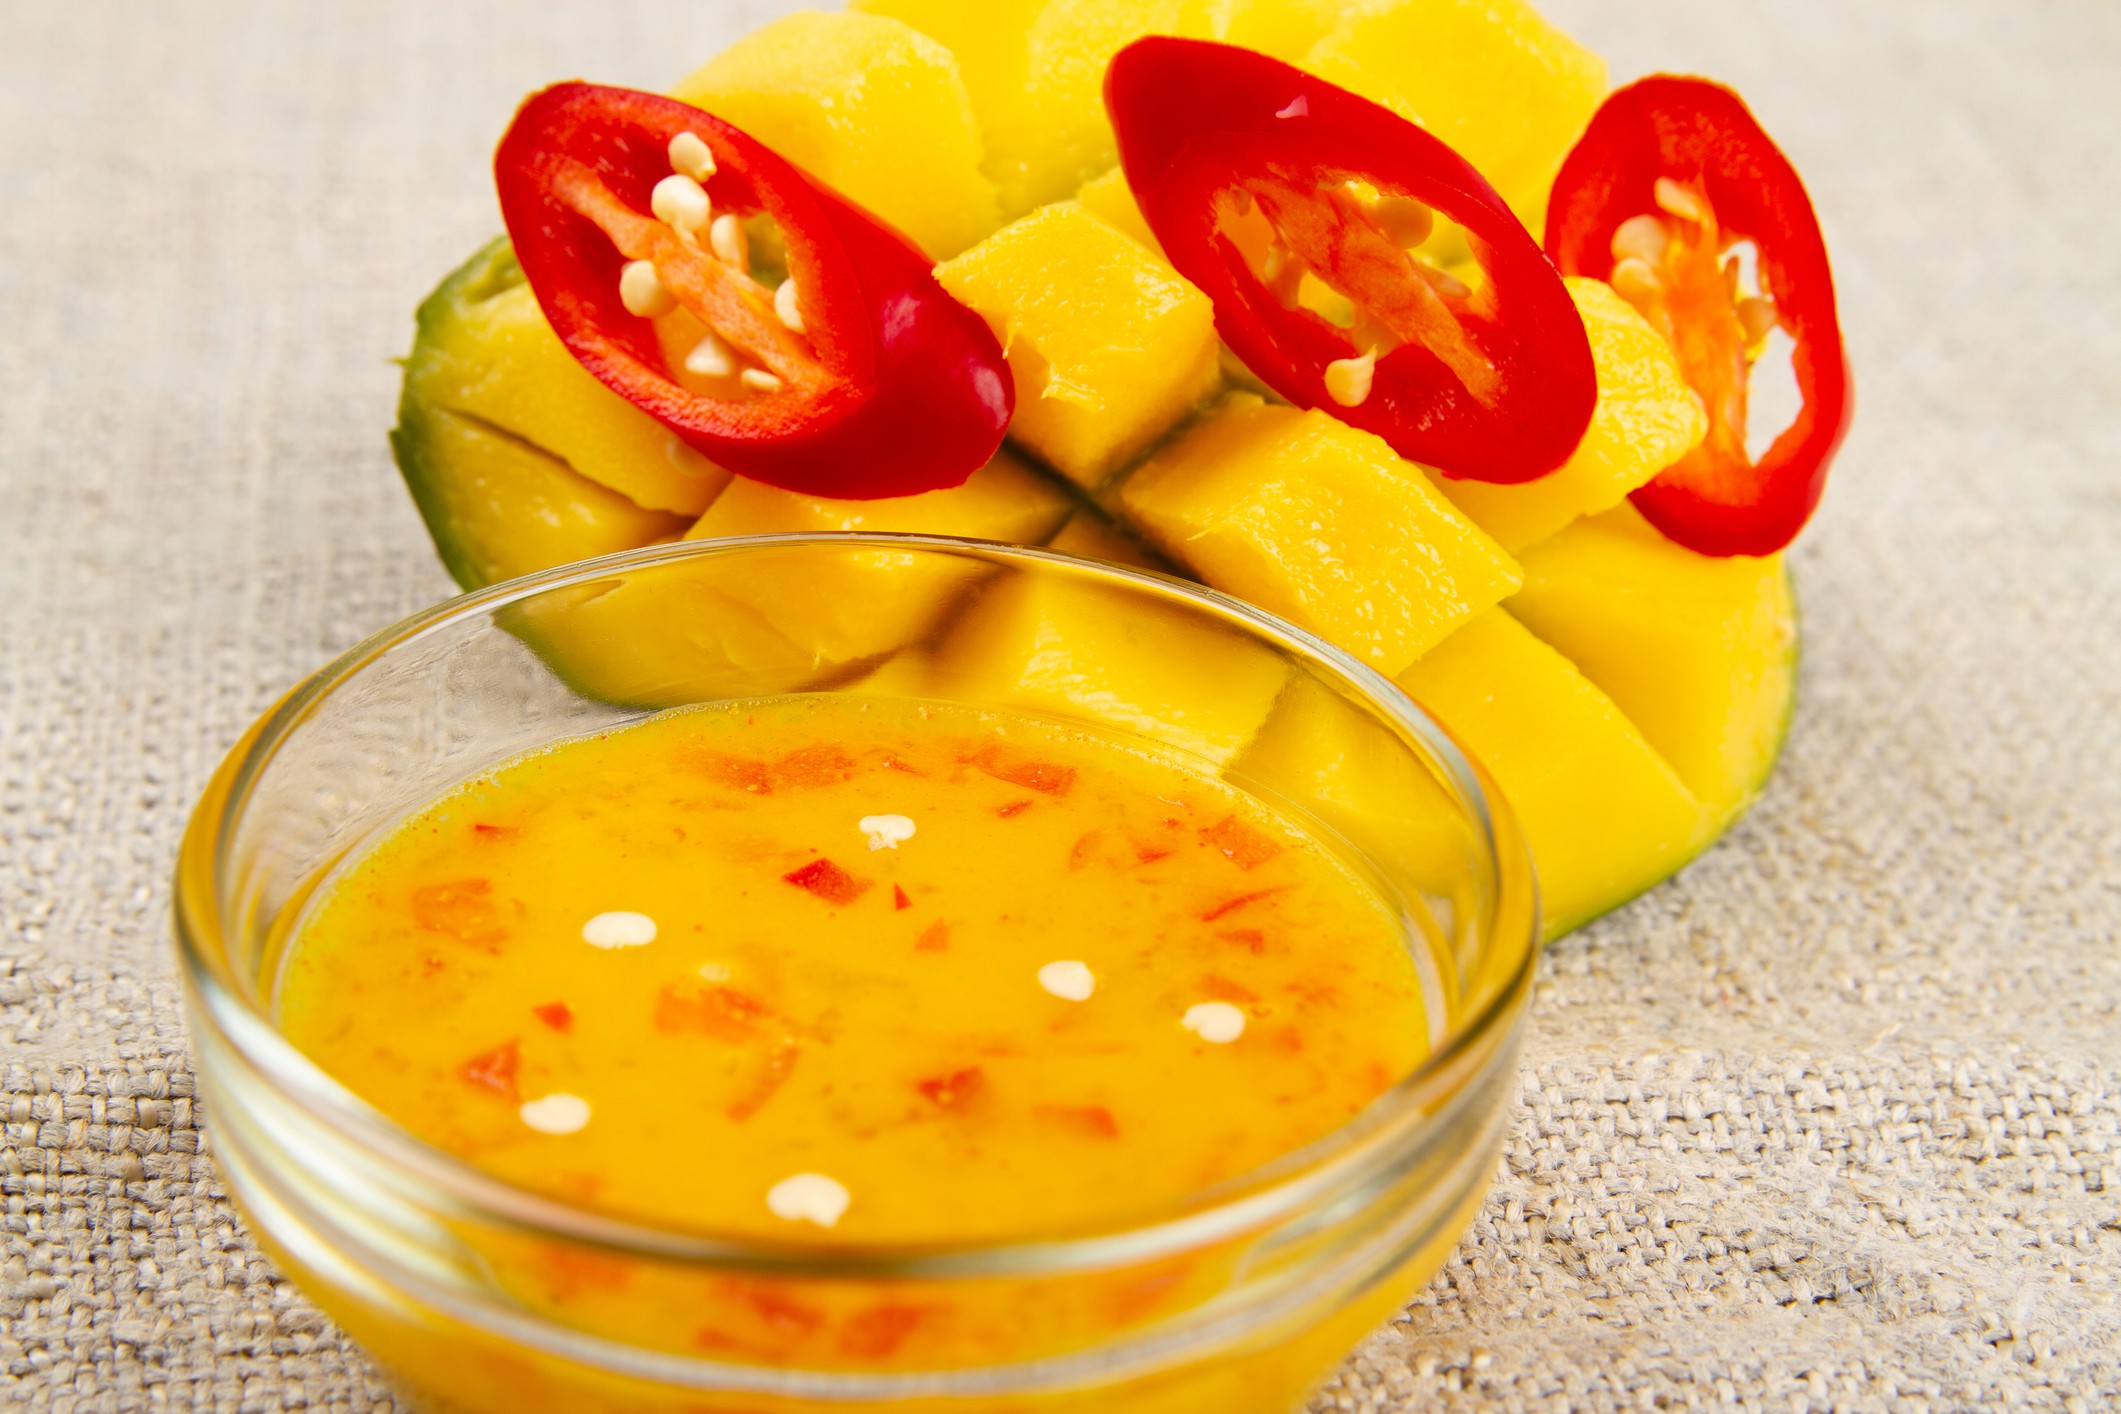 Sos de mango și chili. Rețeta rapidă pentru un gust exotic